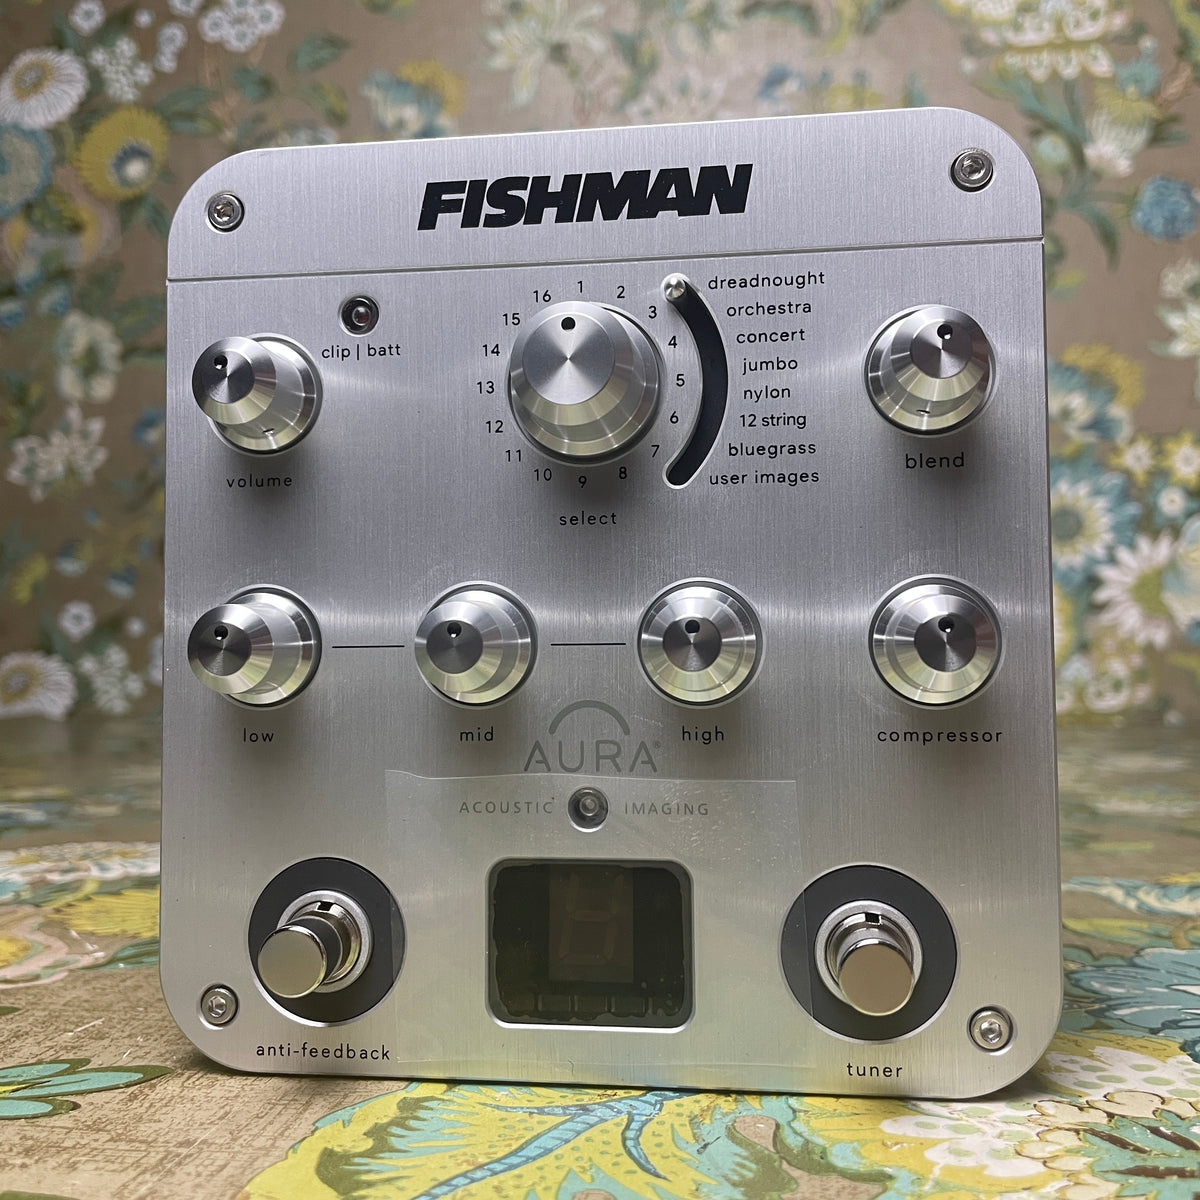 Fishman Aura Spectrum DI Acoustic Guitar Imaging Preamp Pedal 